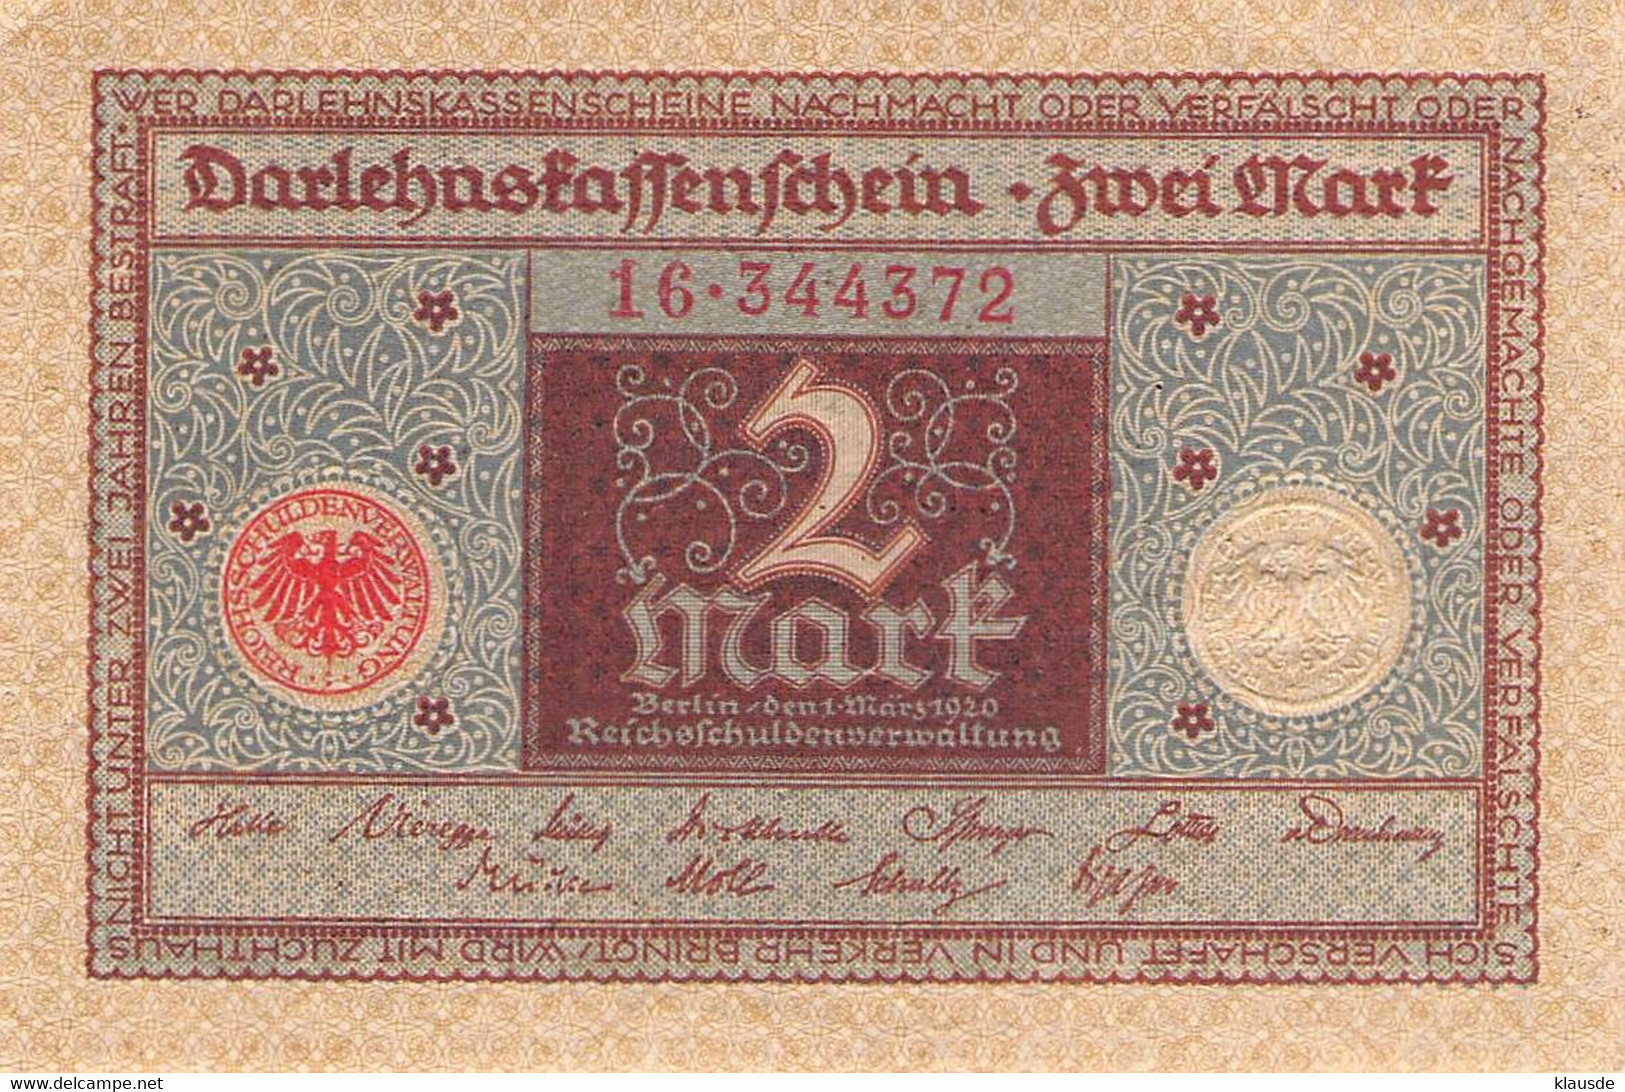 2 Mark 1920 Deutsche Reichsbanknote AU/EF (II) Darlehenskassenschein - 2 Mark